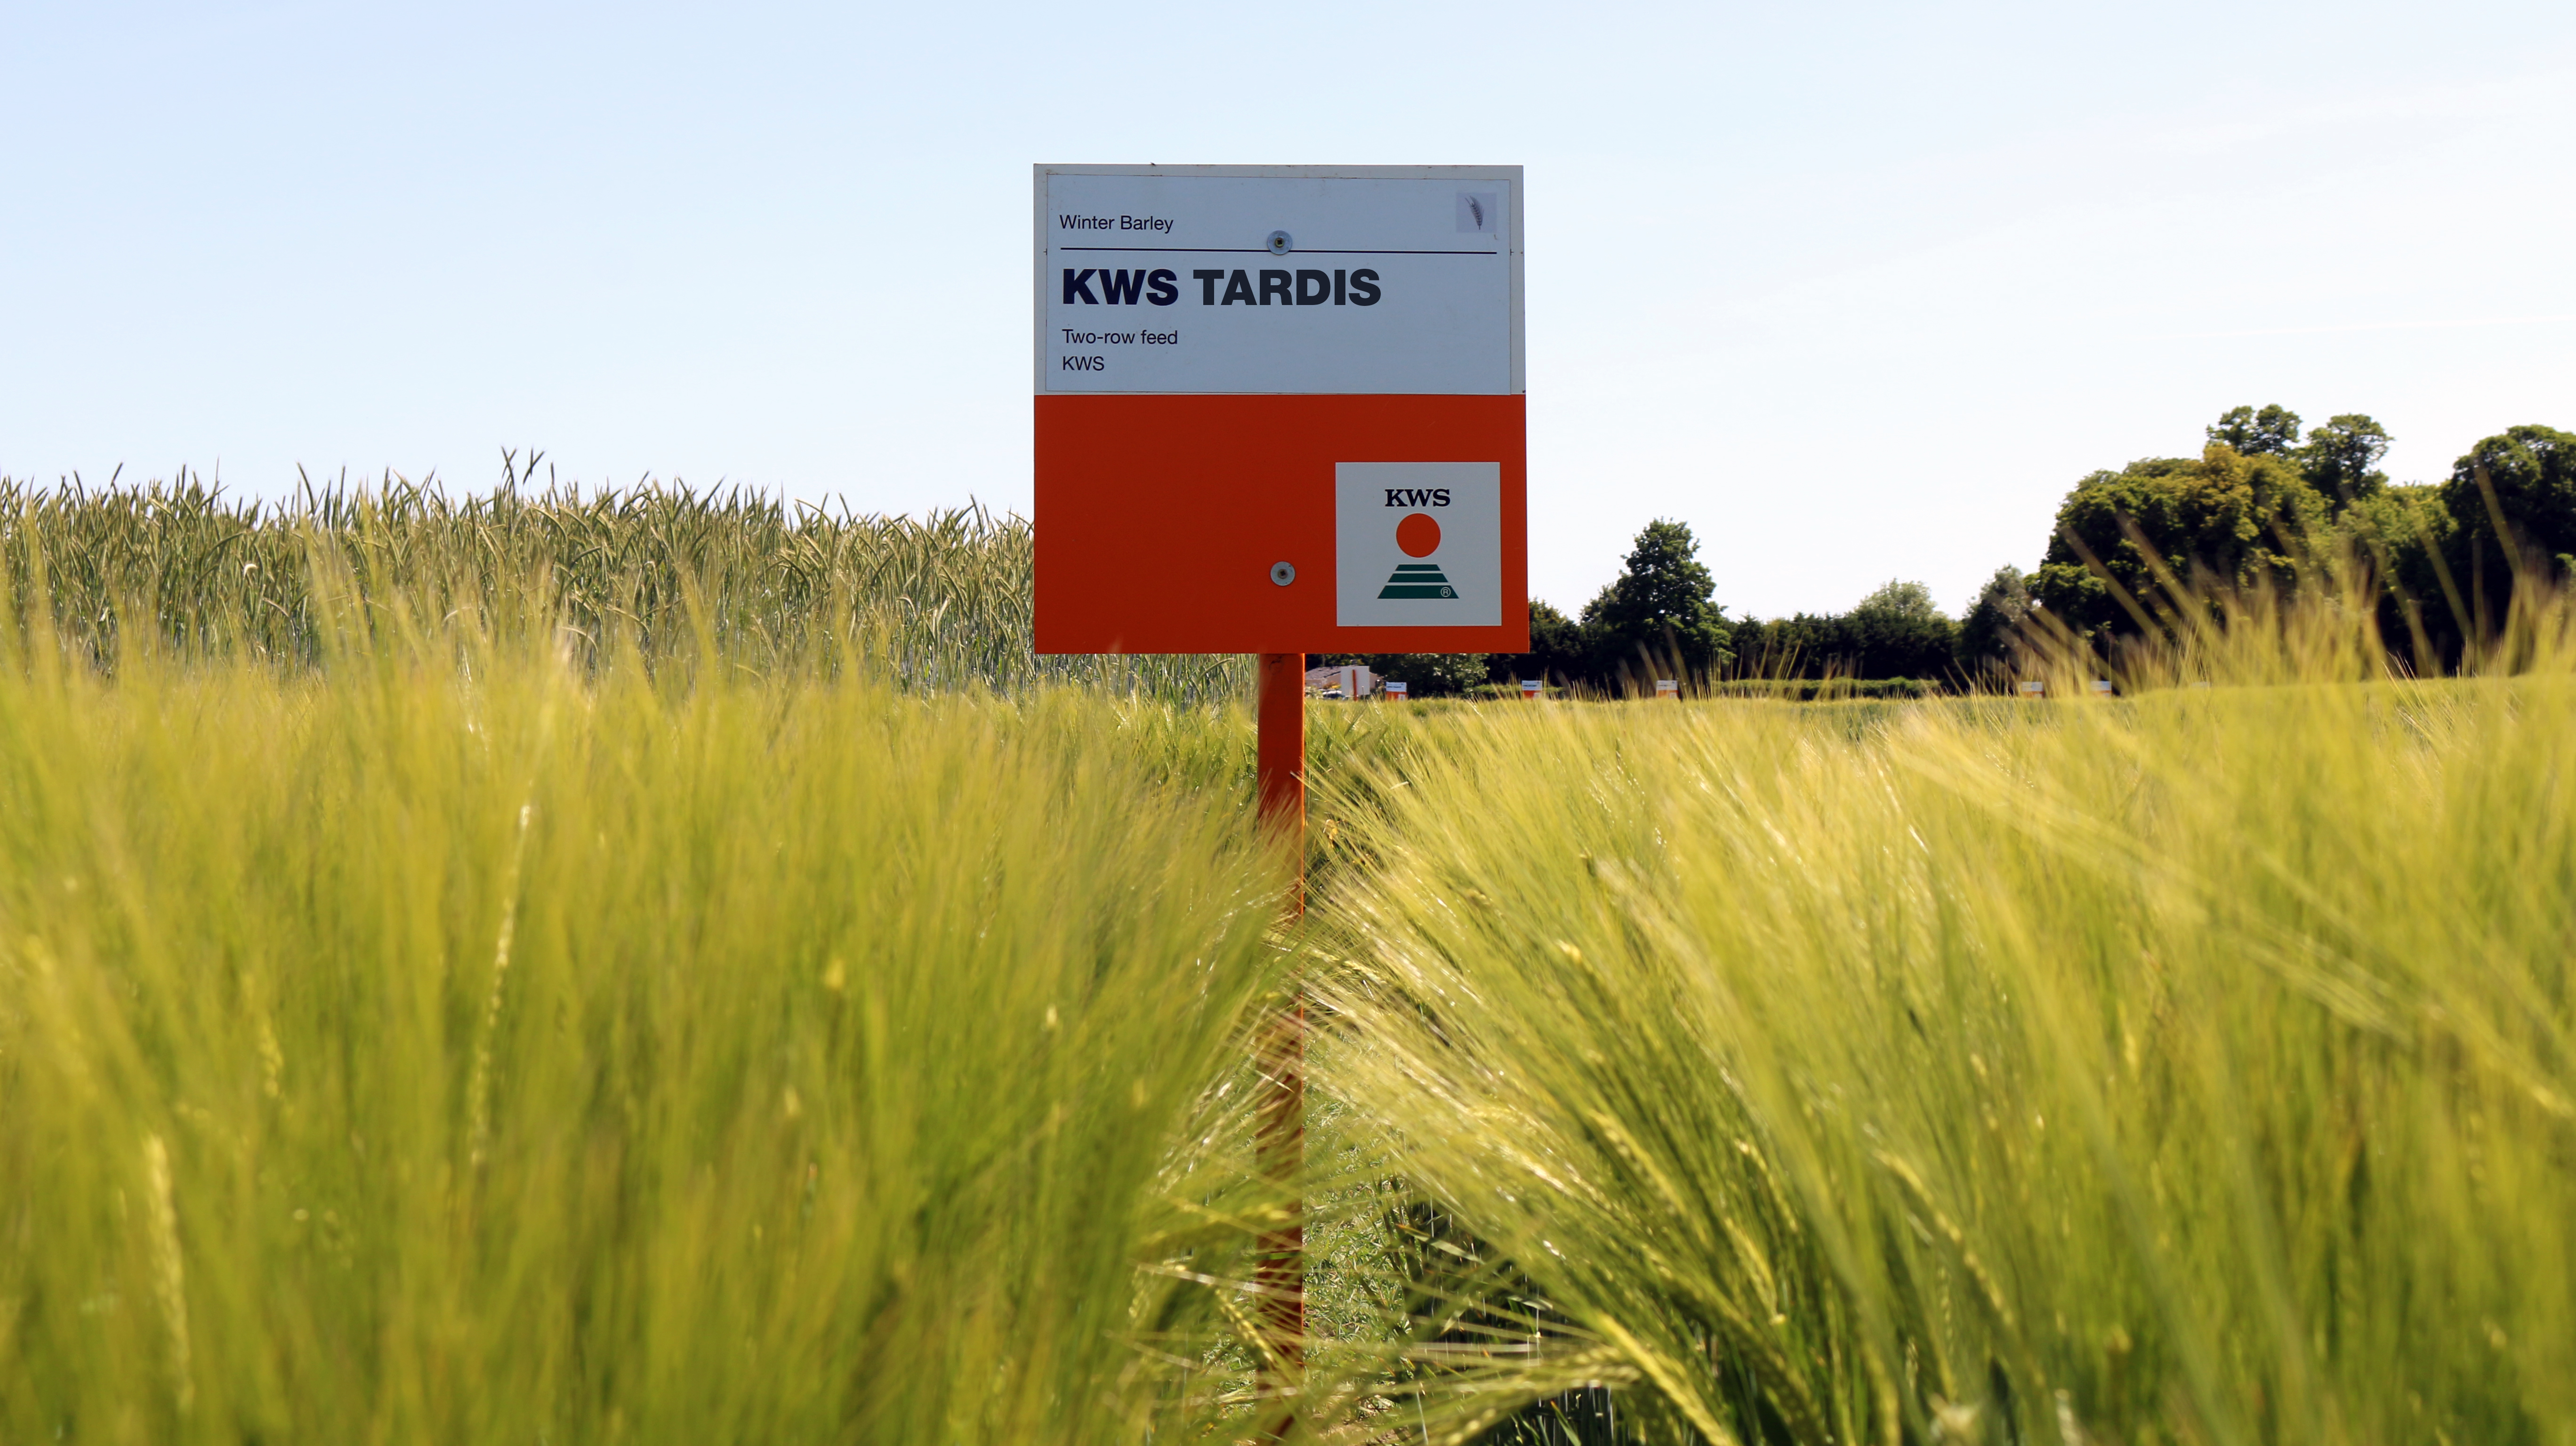 TARDIS is one of the best winter barley varieties